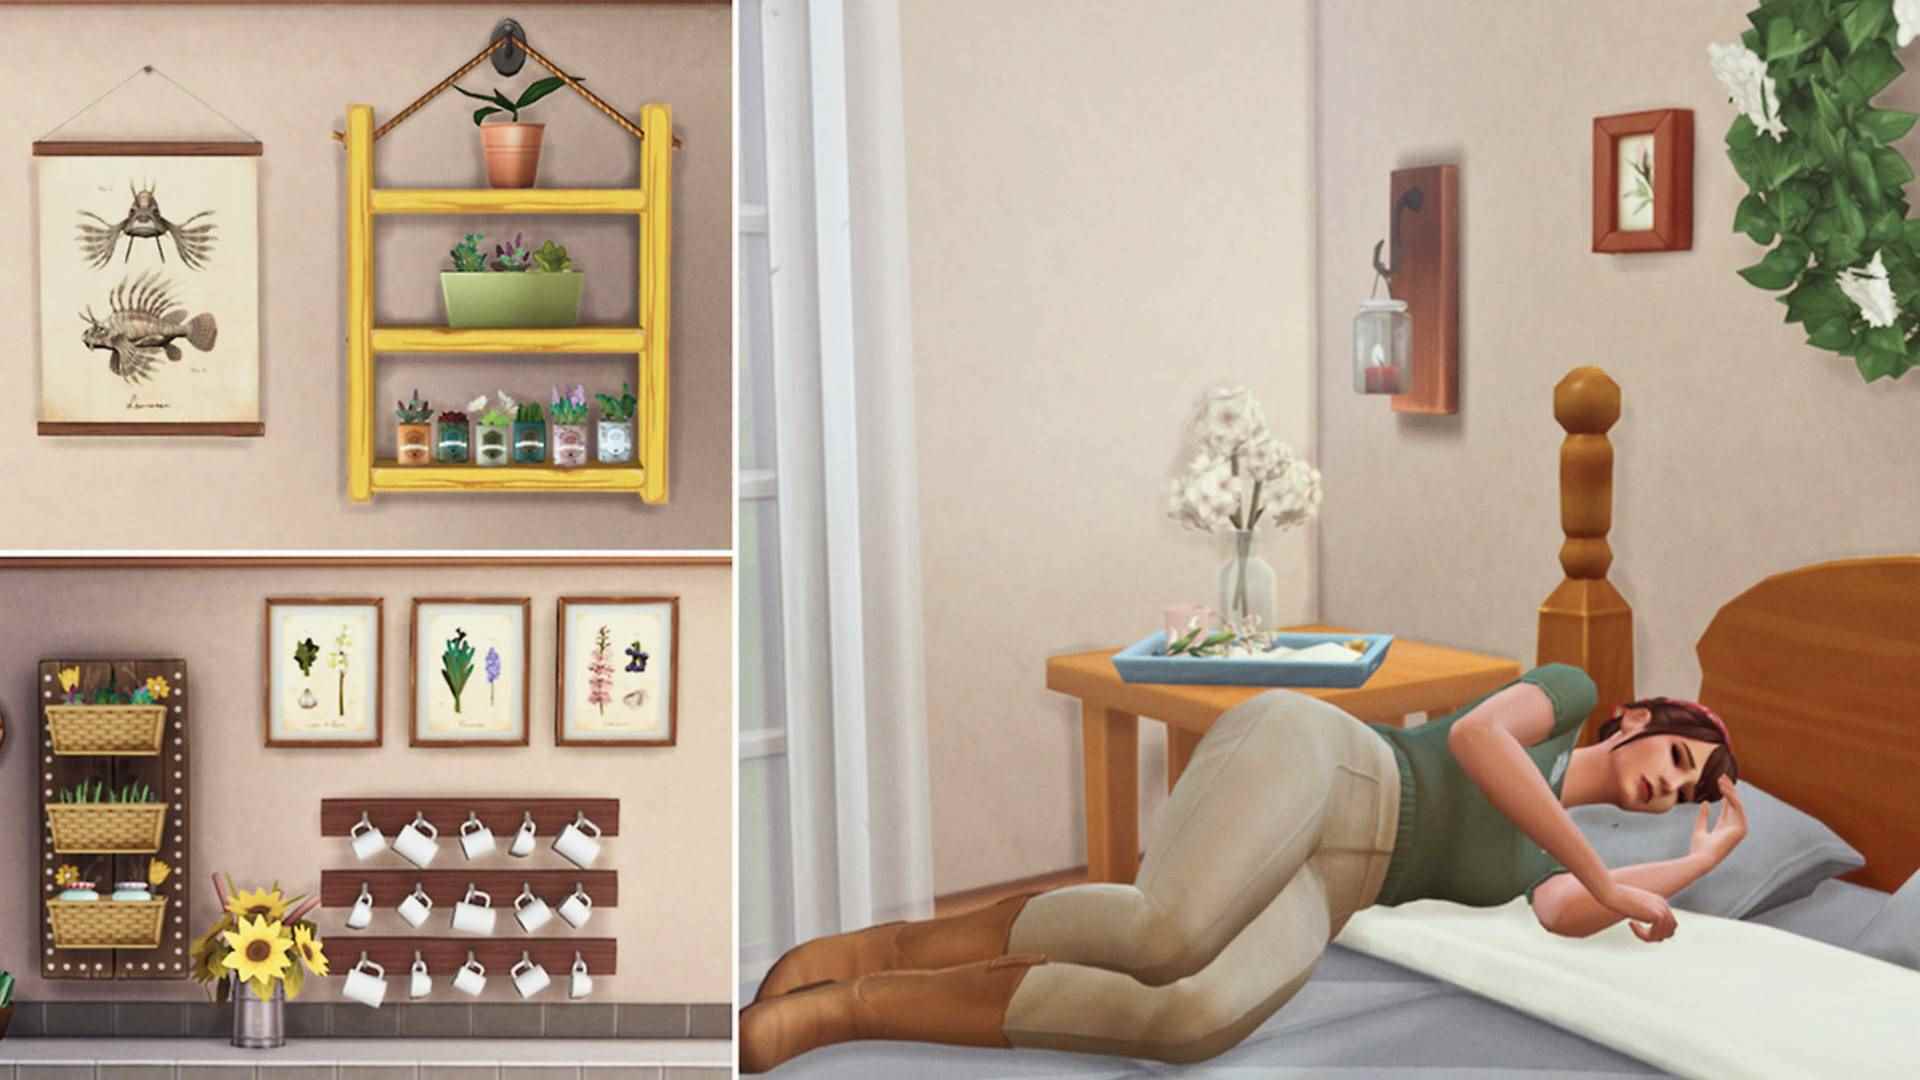 Sims 4 CC: The Sims 4 için özel ev eşyalarını gösteren bir resim montajı